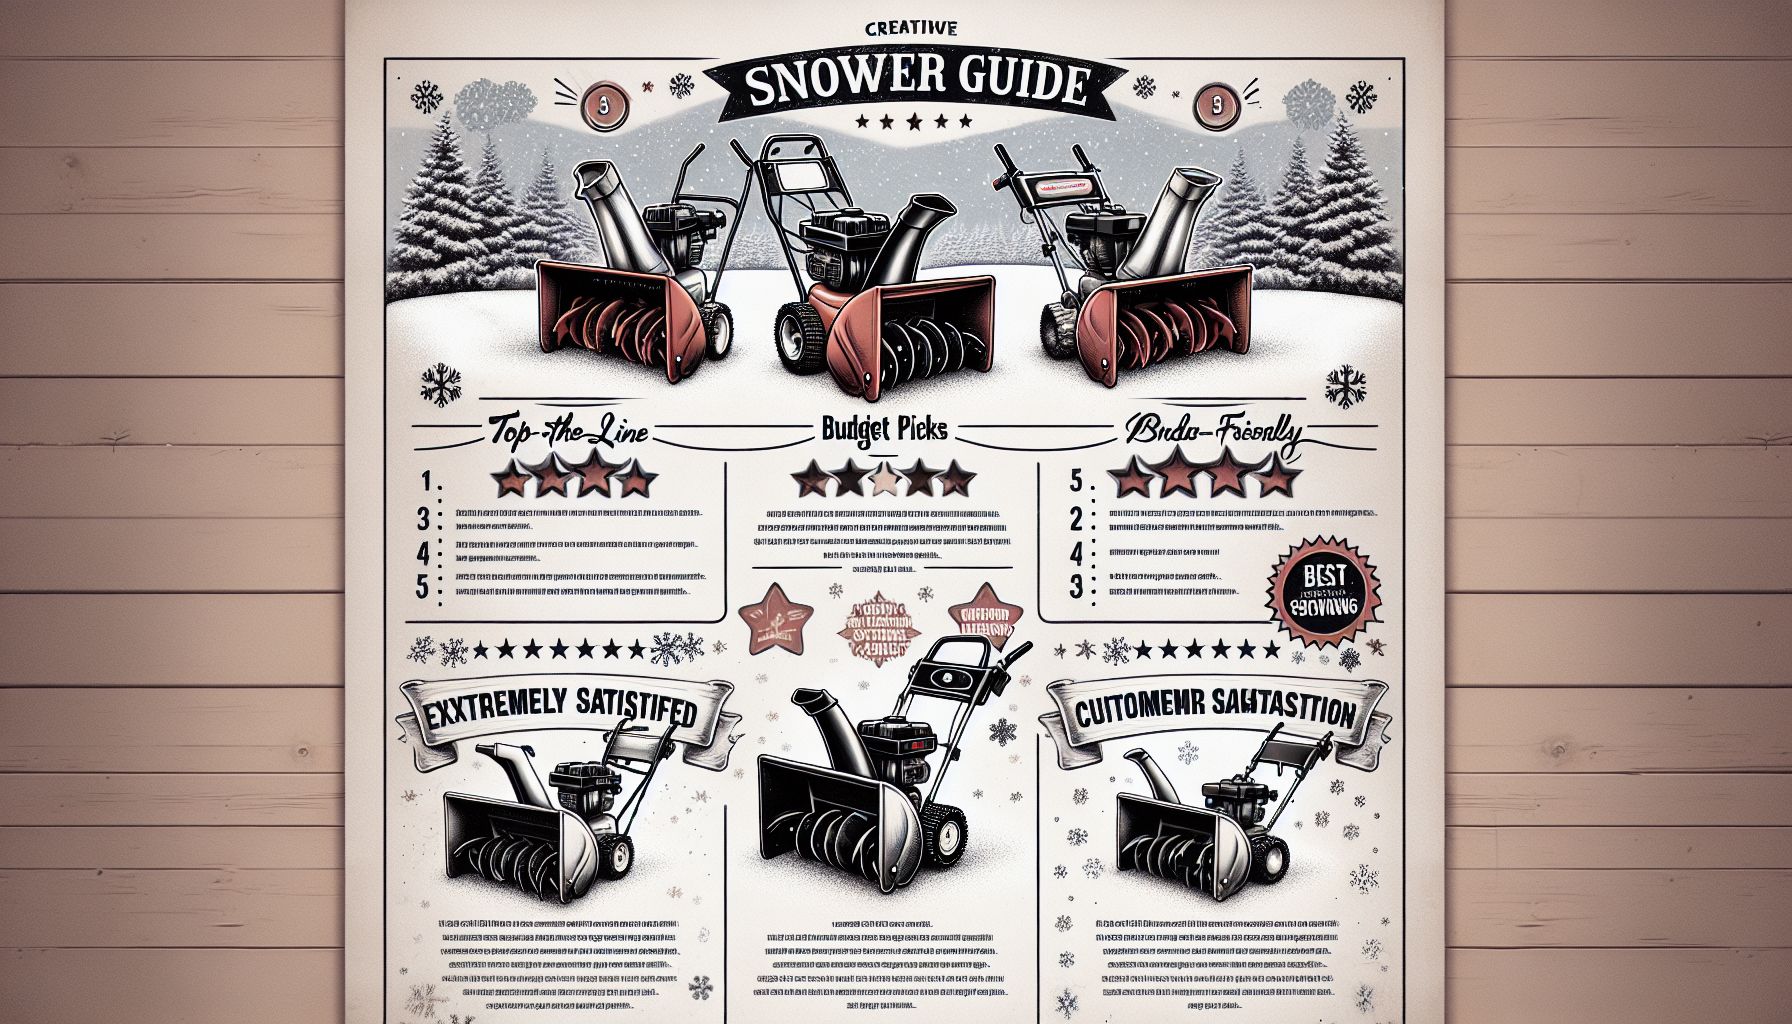 Which Snowblower Brand Is Best?